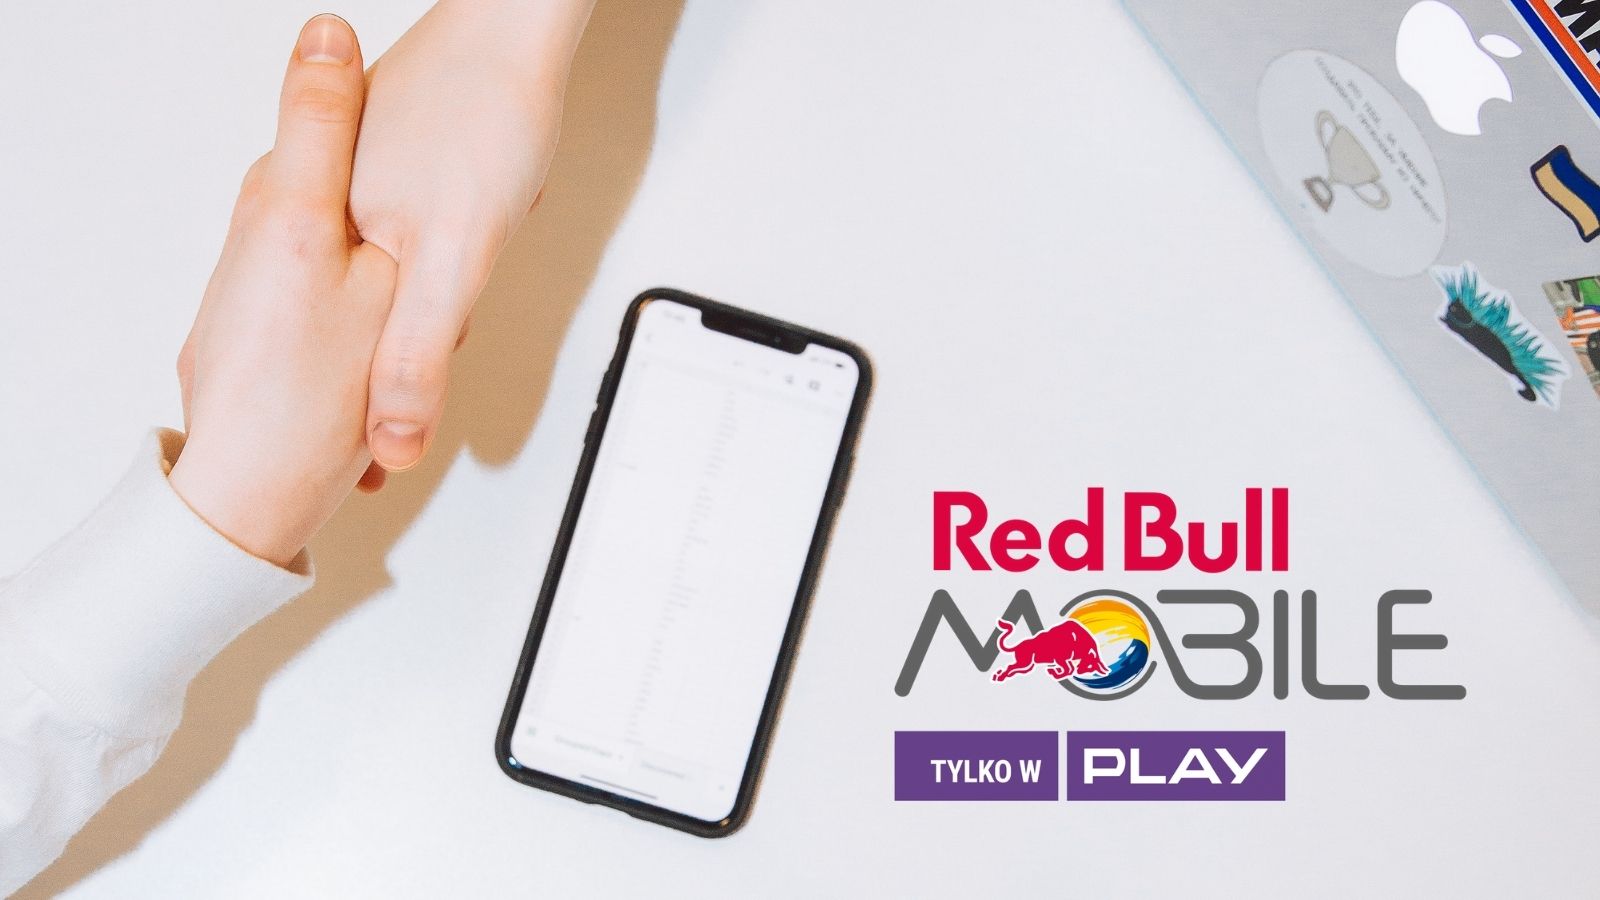 Red Bull MOBILE rozstrzygnął przetarg! 180heartbeats + JUNG v MATT mediarun red bull mobile